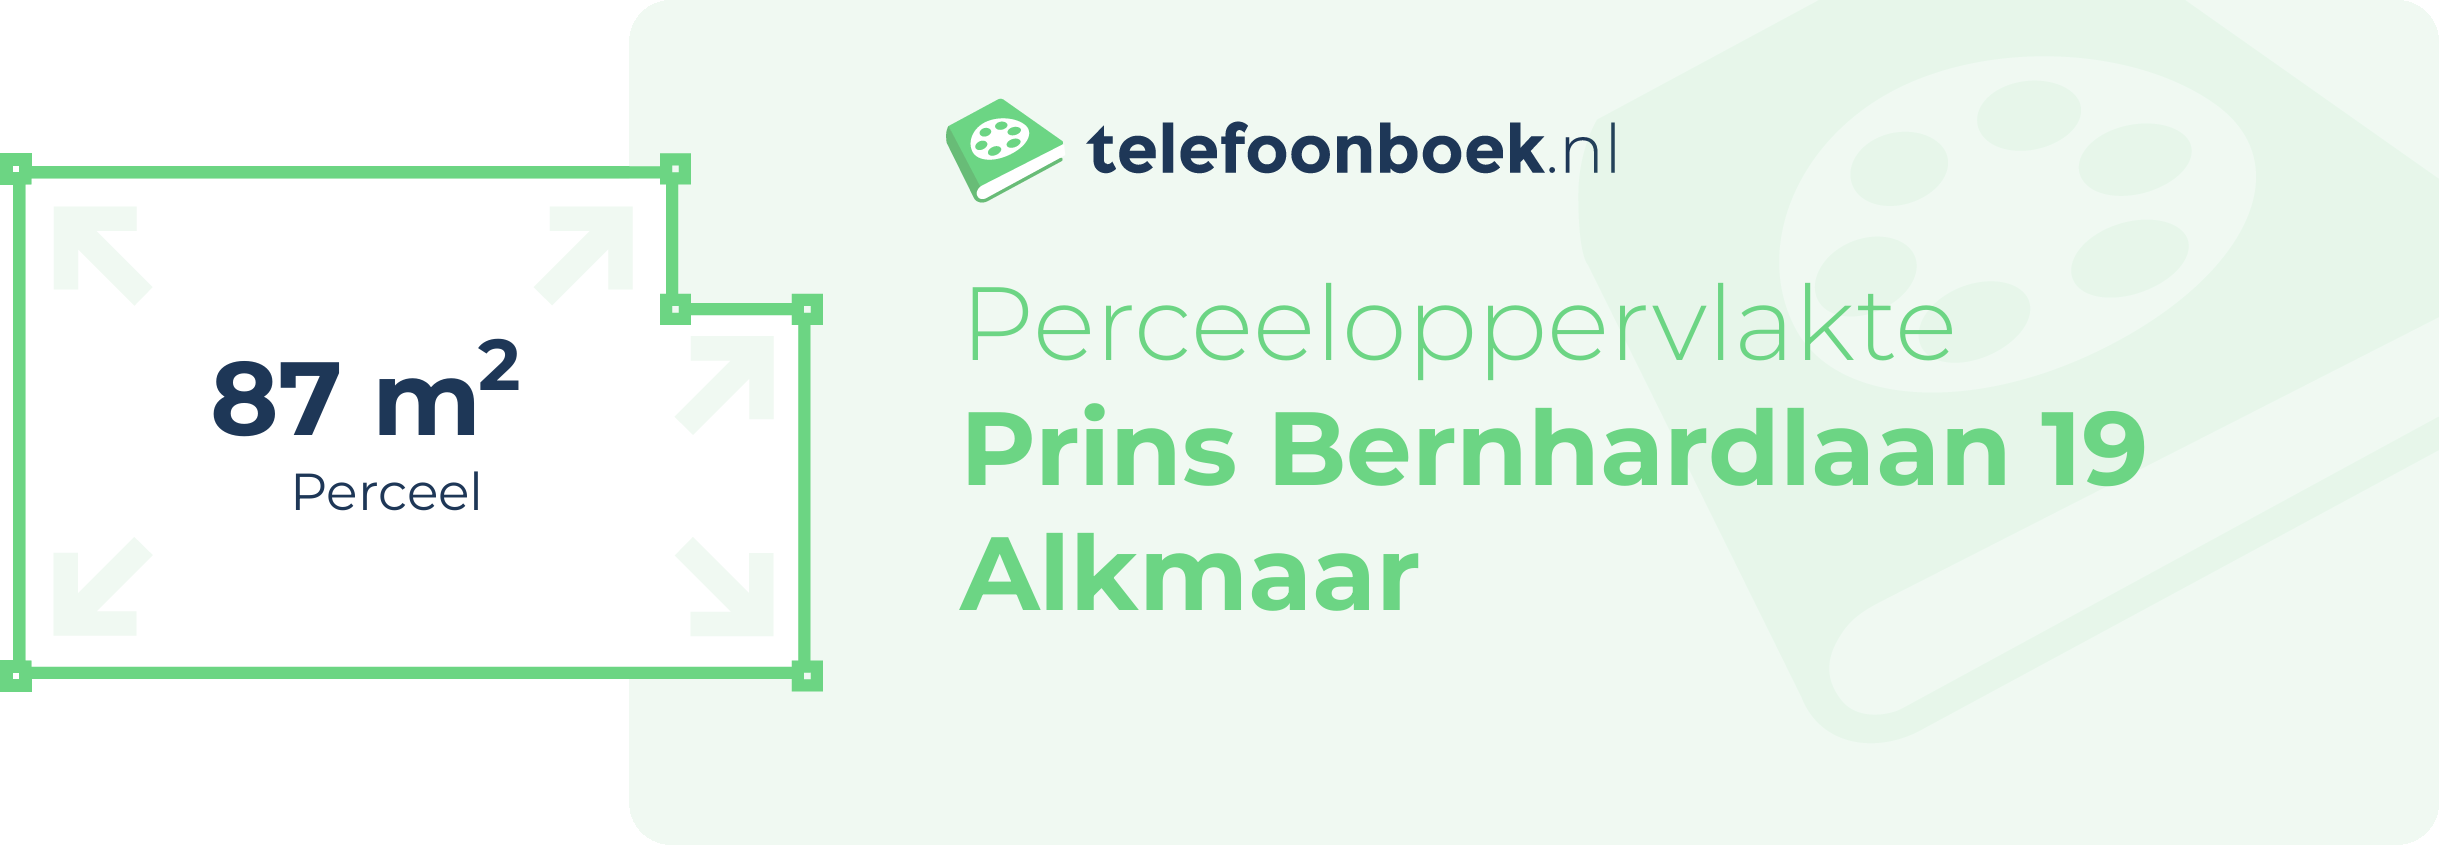 Perceeloppervlakte Prins Bernhardlaan 19 Alkmaar